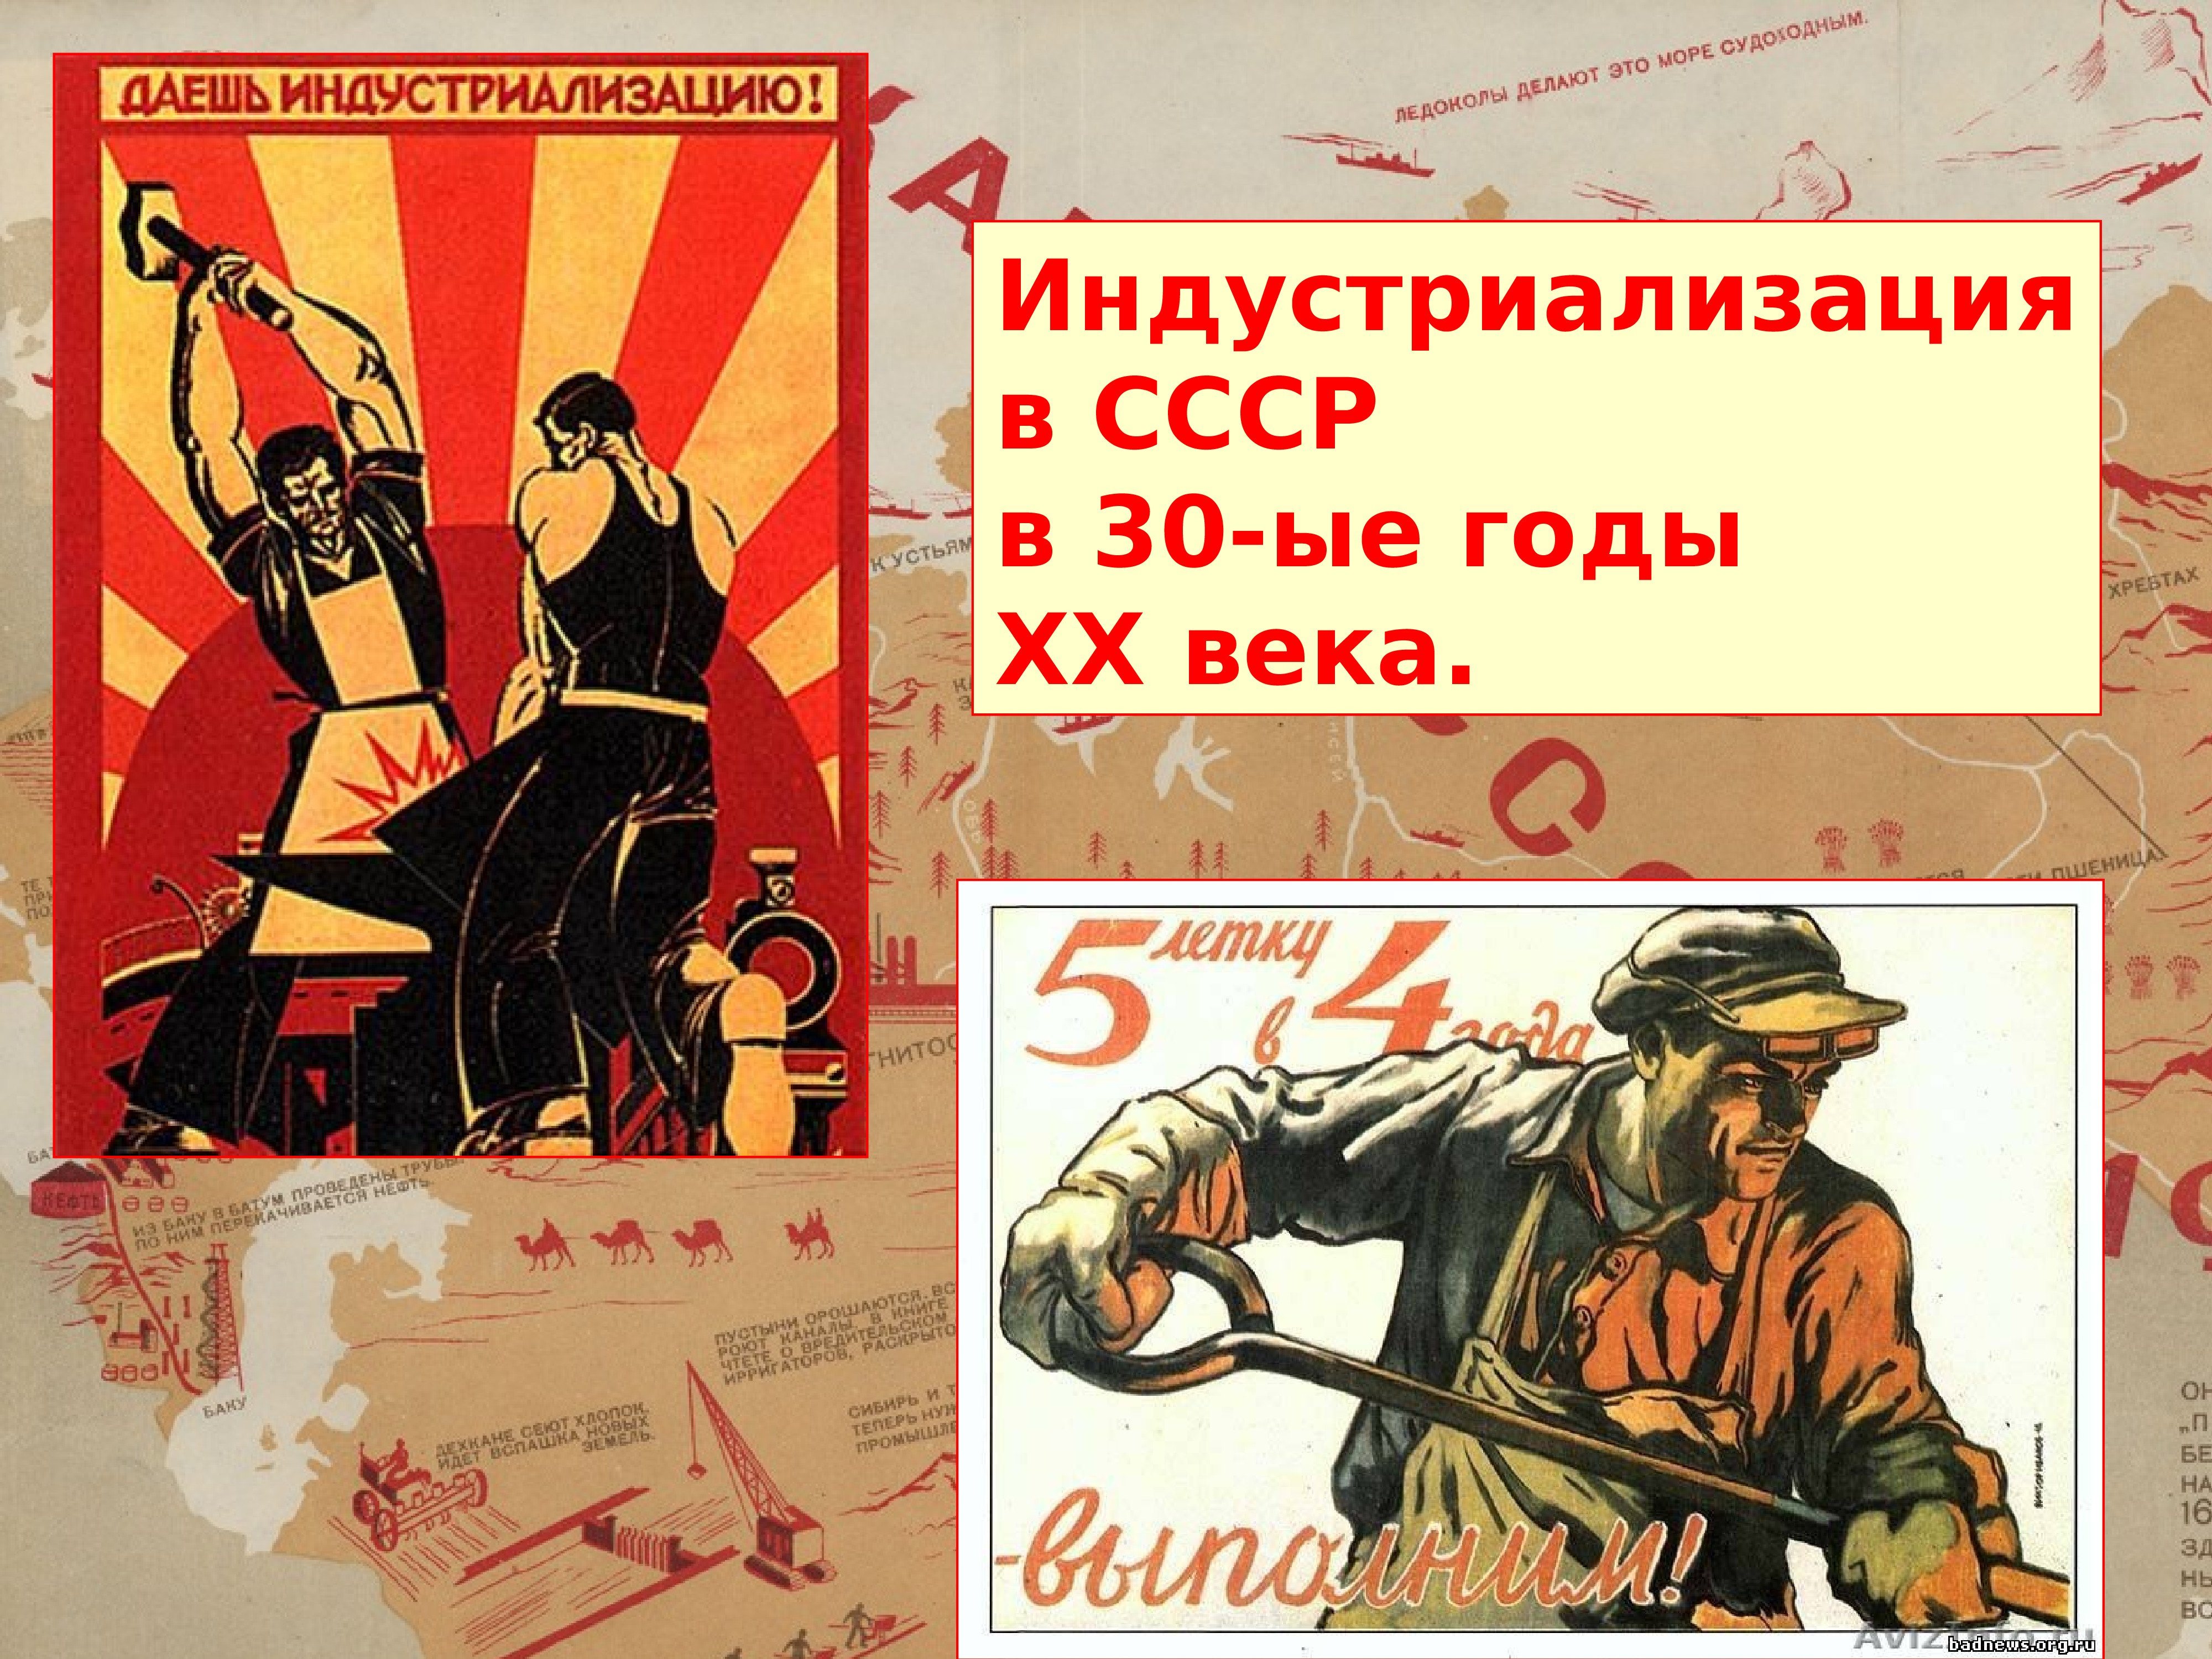 Произведения 30 годов 20 века. Индустриализация. Индустриализация в СССР плакаты. Индустриализация 1920-1930 плакат. Индустриализация в СССР 20-30 годы.